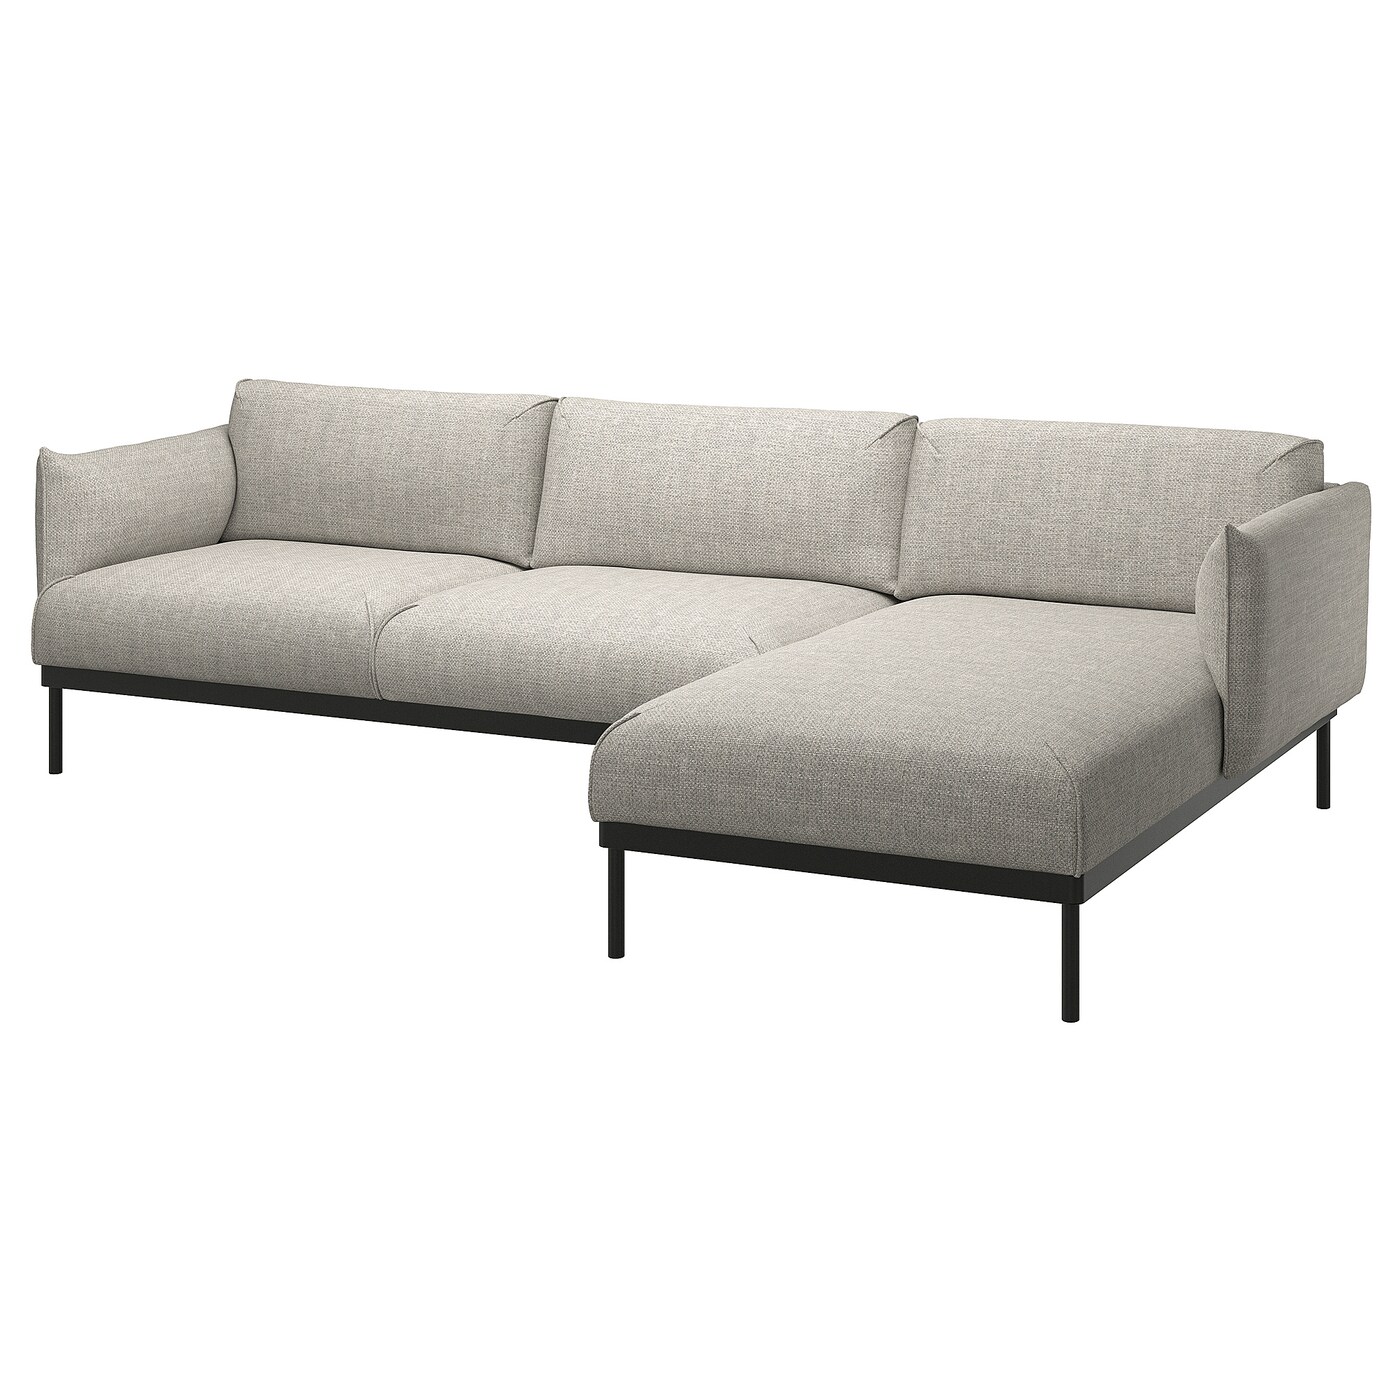 ИКЕА ÄPPLARYD 3-місний диван з шезлонгом - Lejde світло-сірий, 094.180.51